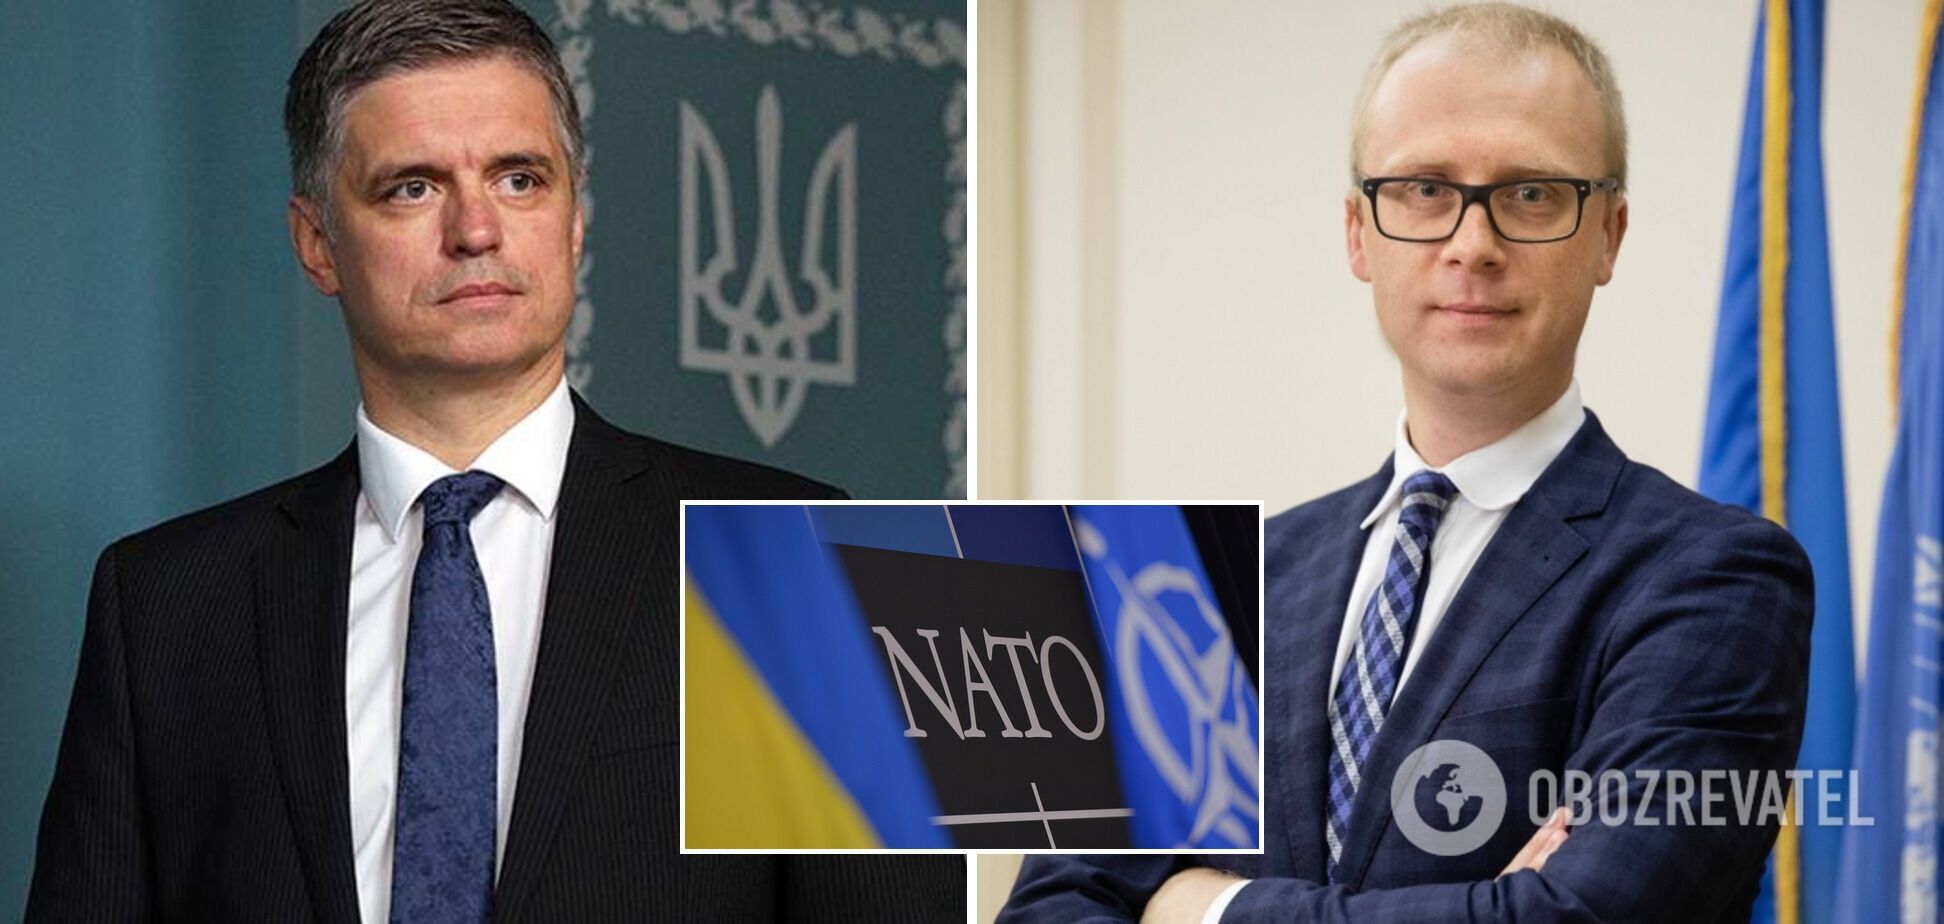 Олег Николенко: слова Пристайко о НАТО были вырваны из контекста